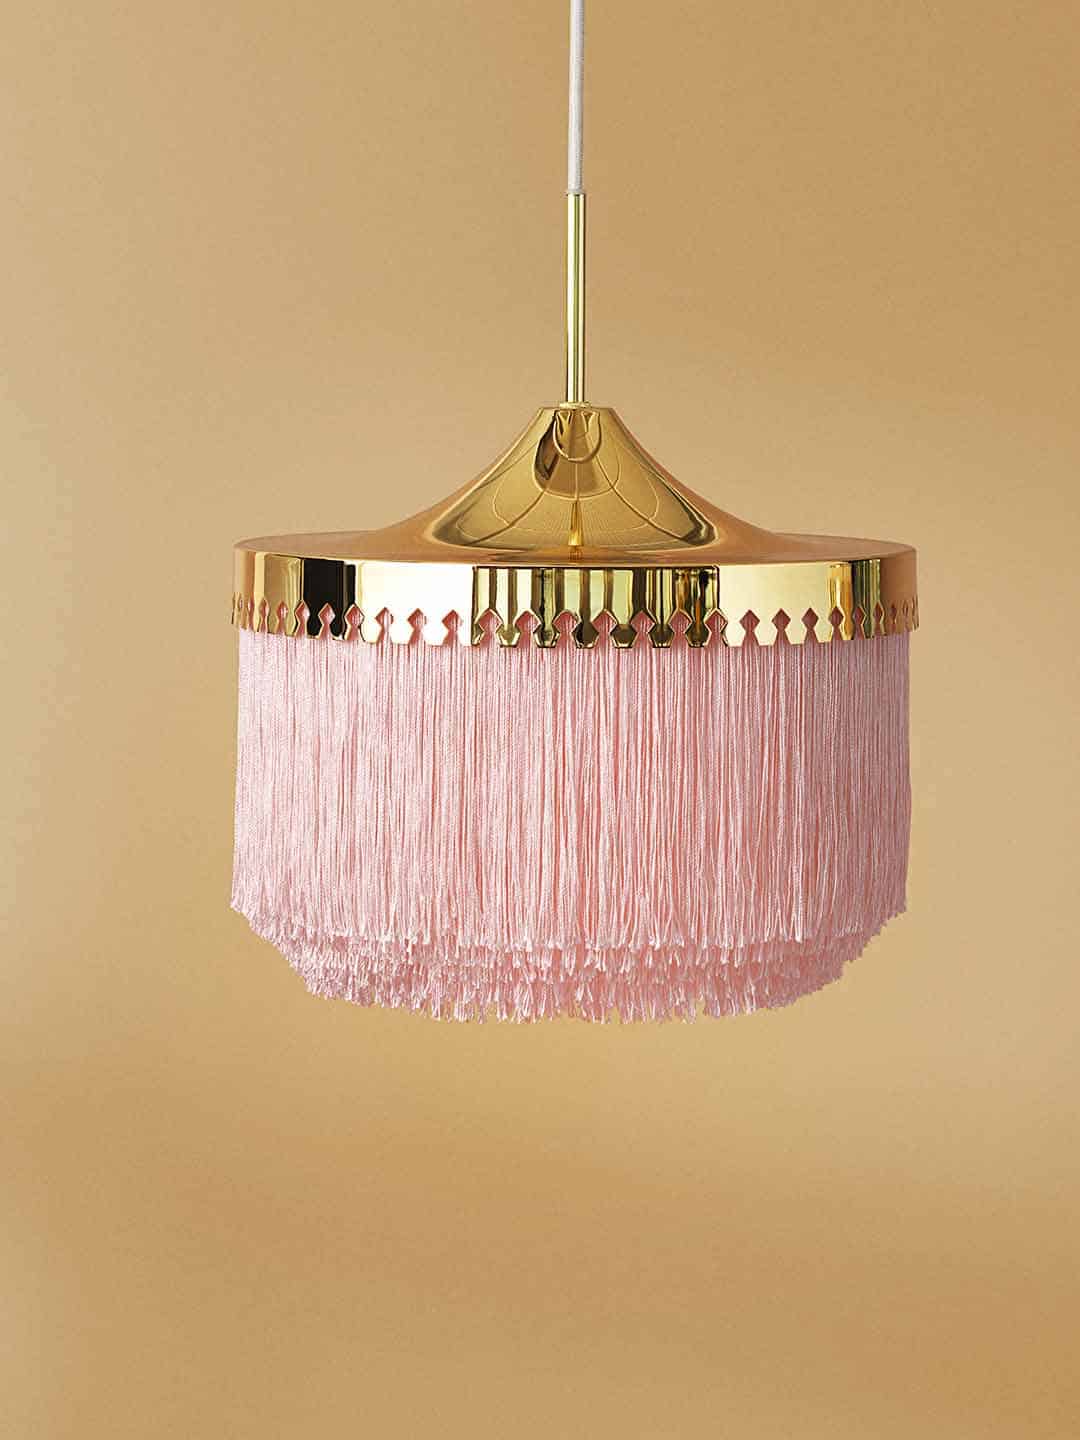 Светильник подвесной Warm Nordic Fringe диаметром 30 см в бледно-розовом цвете на светлом фоне